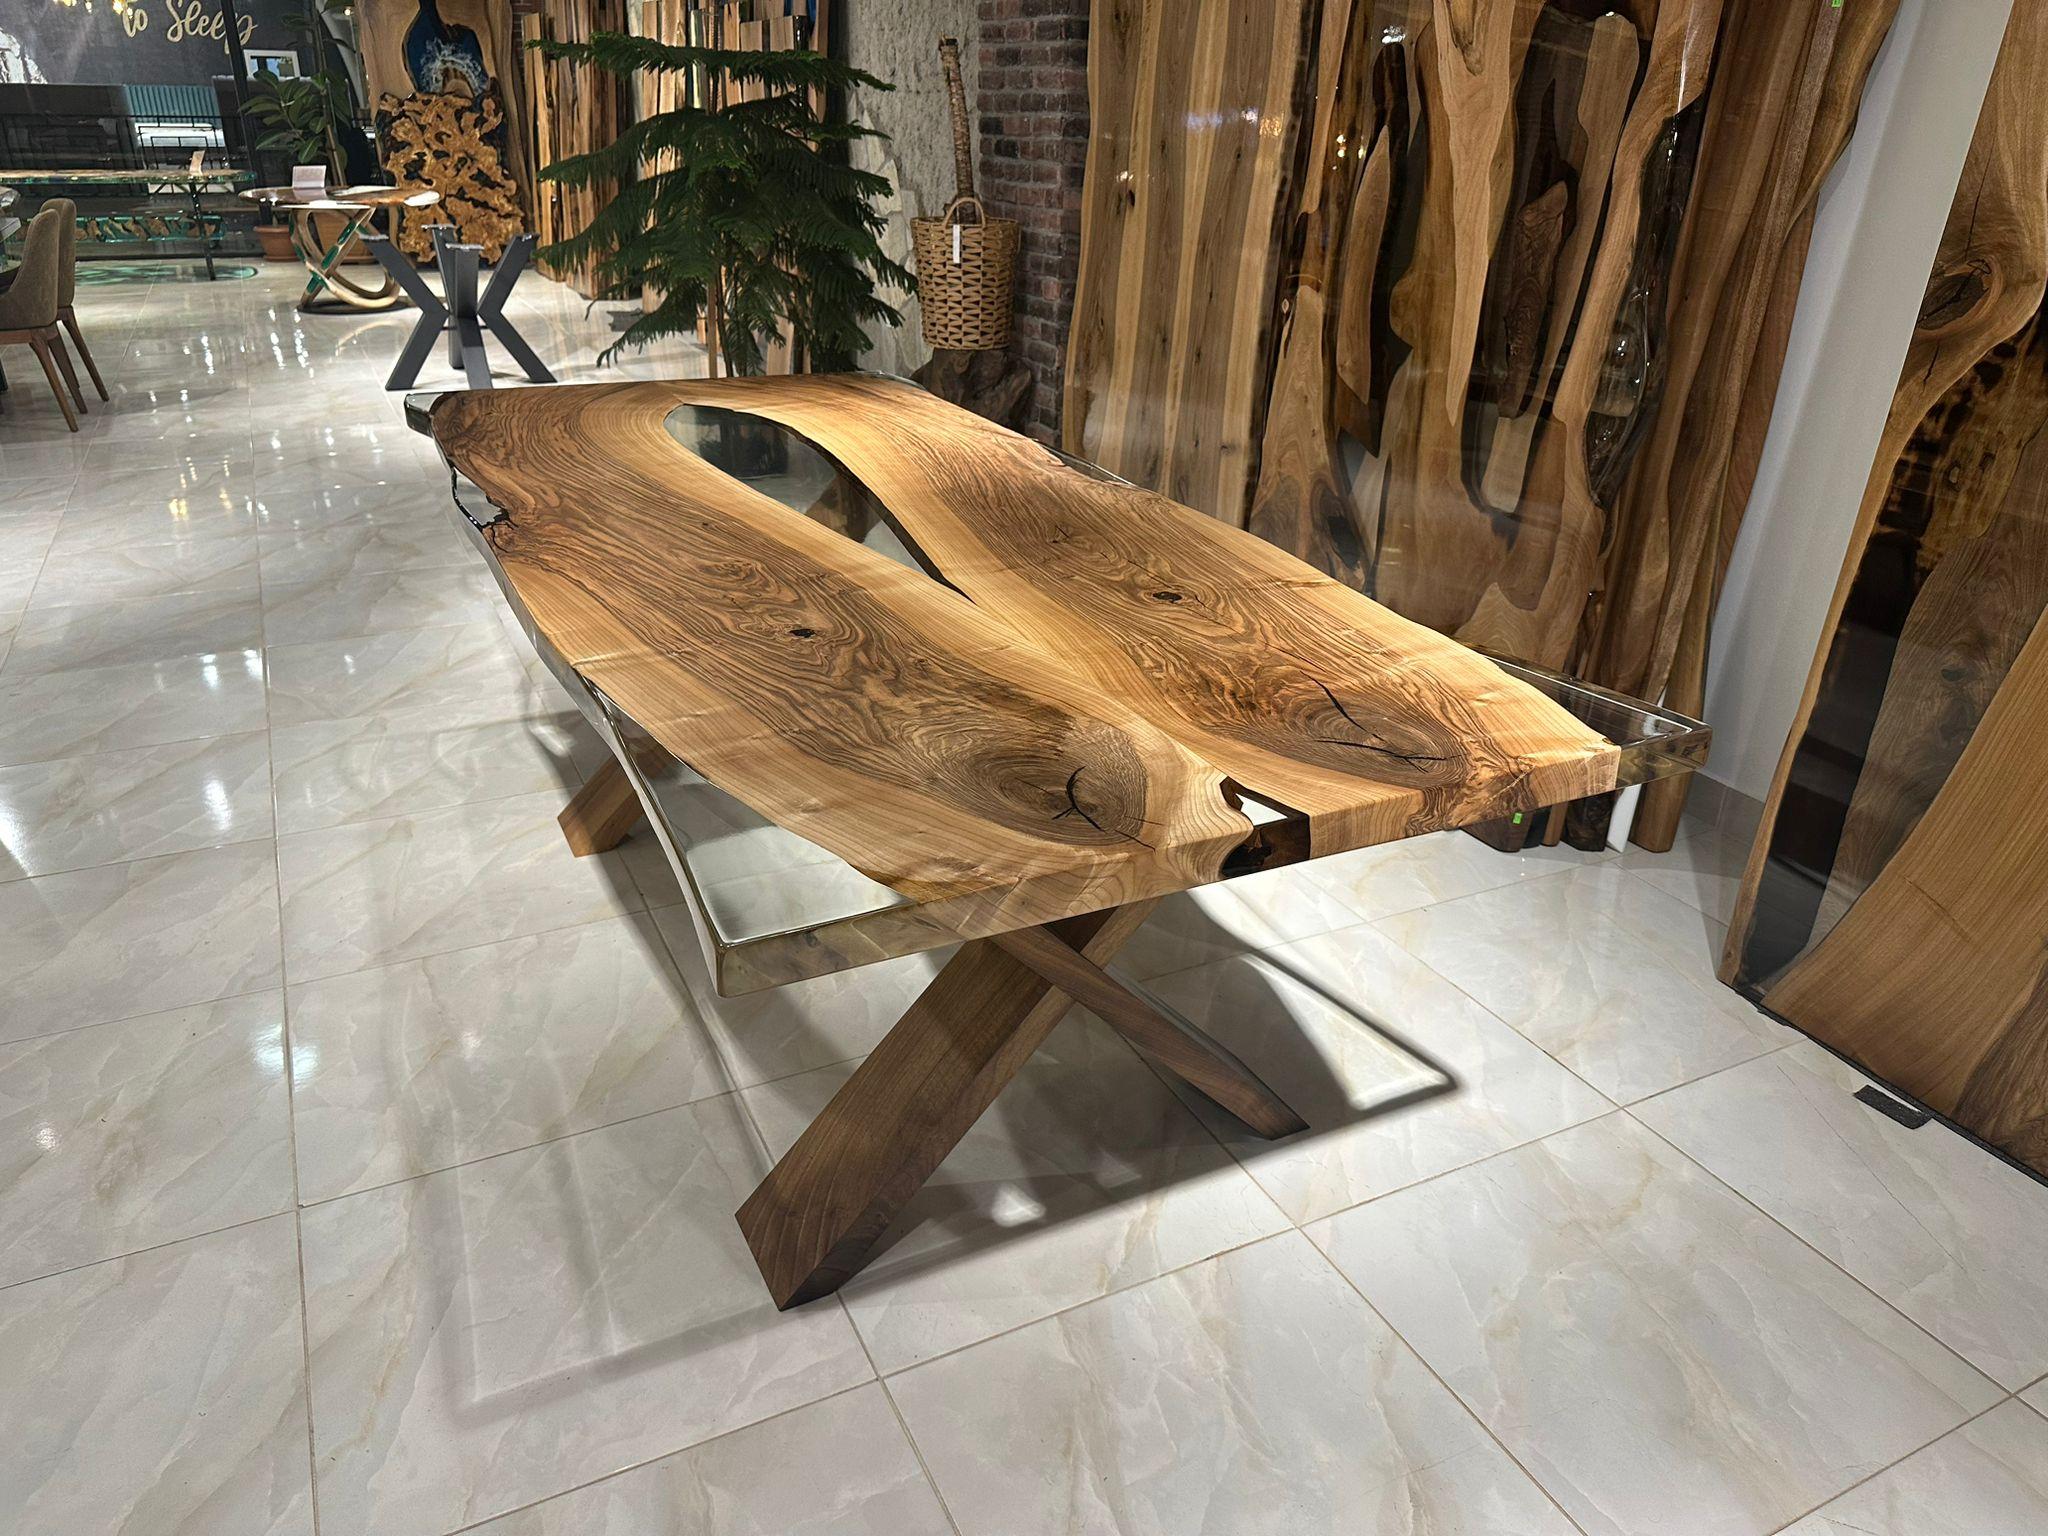 Esstisch aus klarem Walnuss-Epoxidharz 

Dieser Tisch ist aus Walnussholz gefertigt. Die Maserung und die Struktur des Holzes beschreiben, wie ein natürliches Walnussholz aussieht.
Er kann als Esstisch oder als Konferenztisch verwendet werden. Für